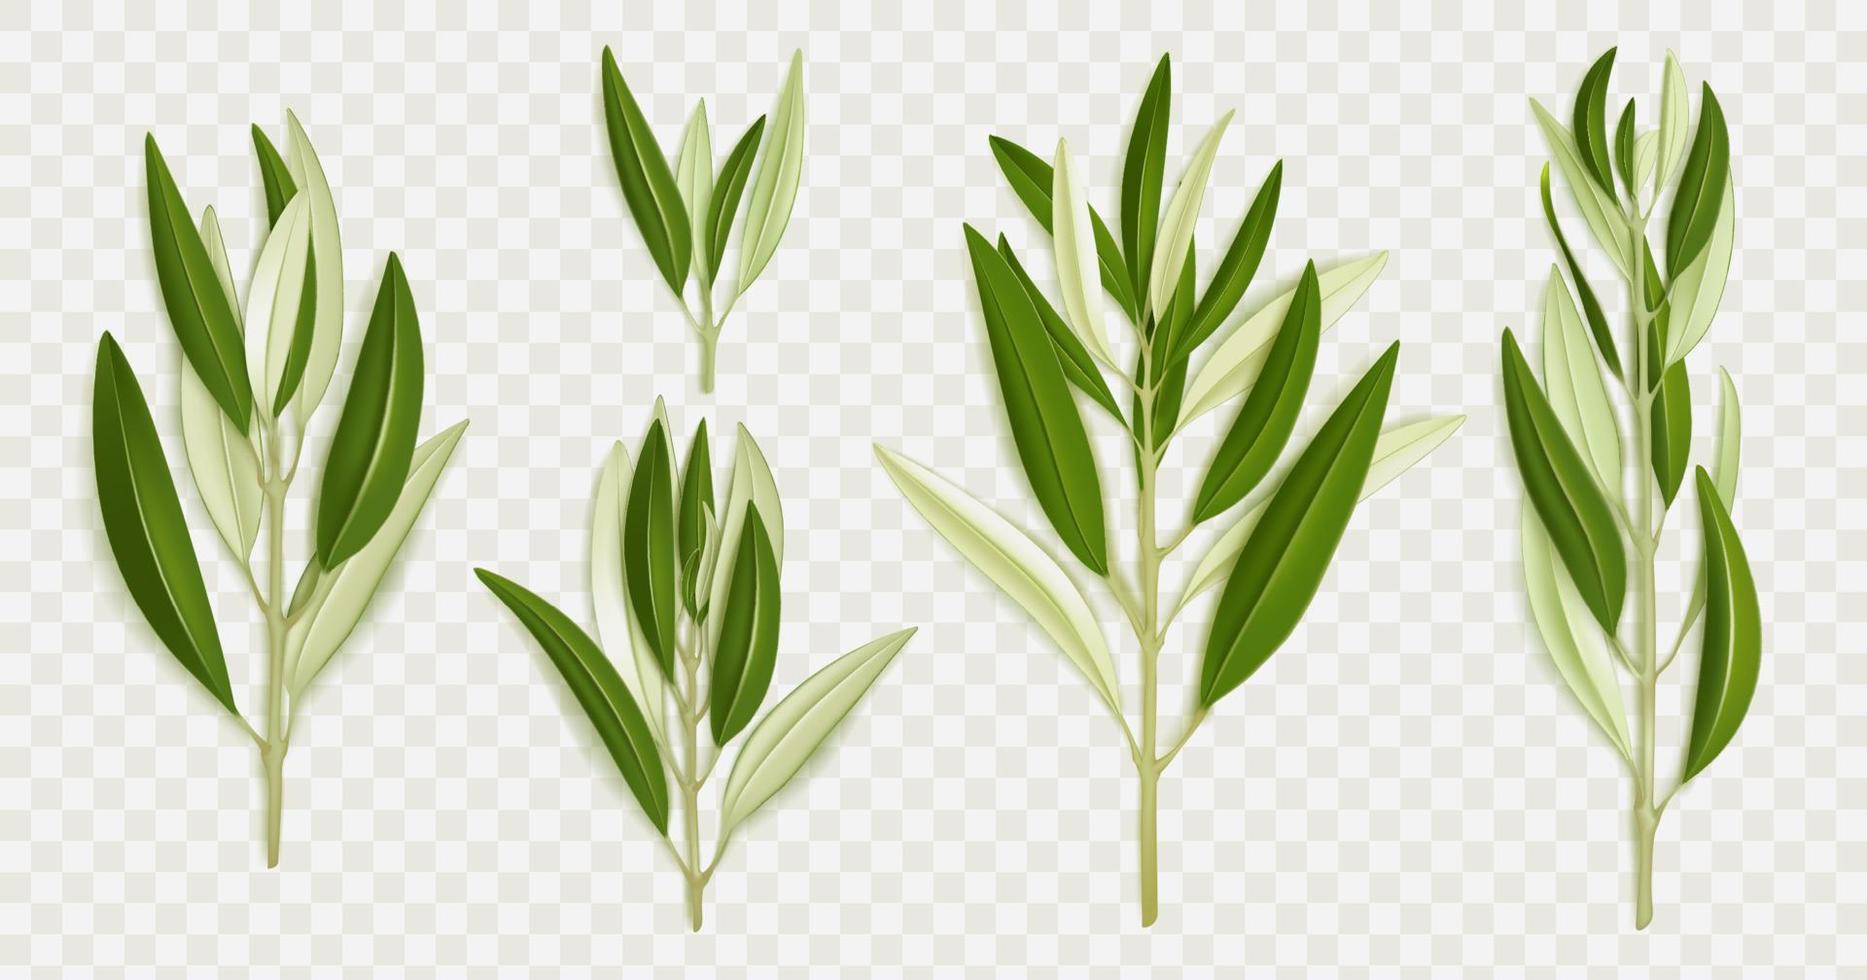 Olivenzweige mit grünen Blättern vektor